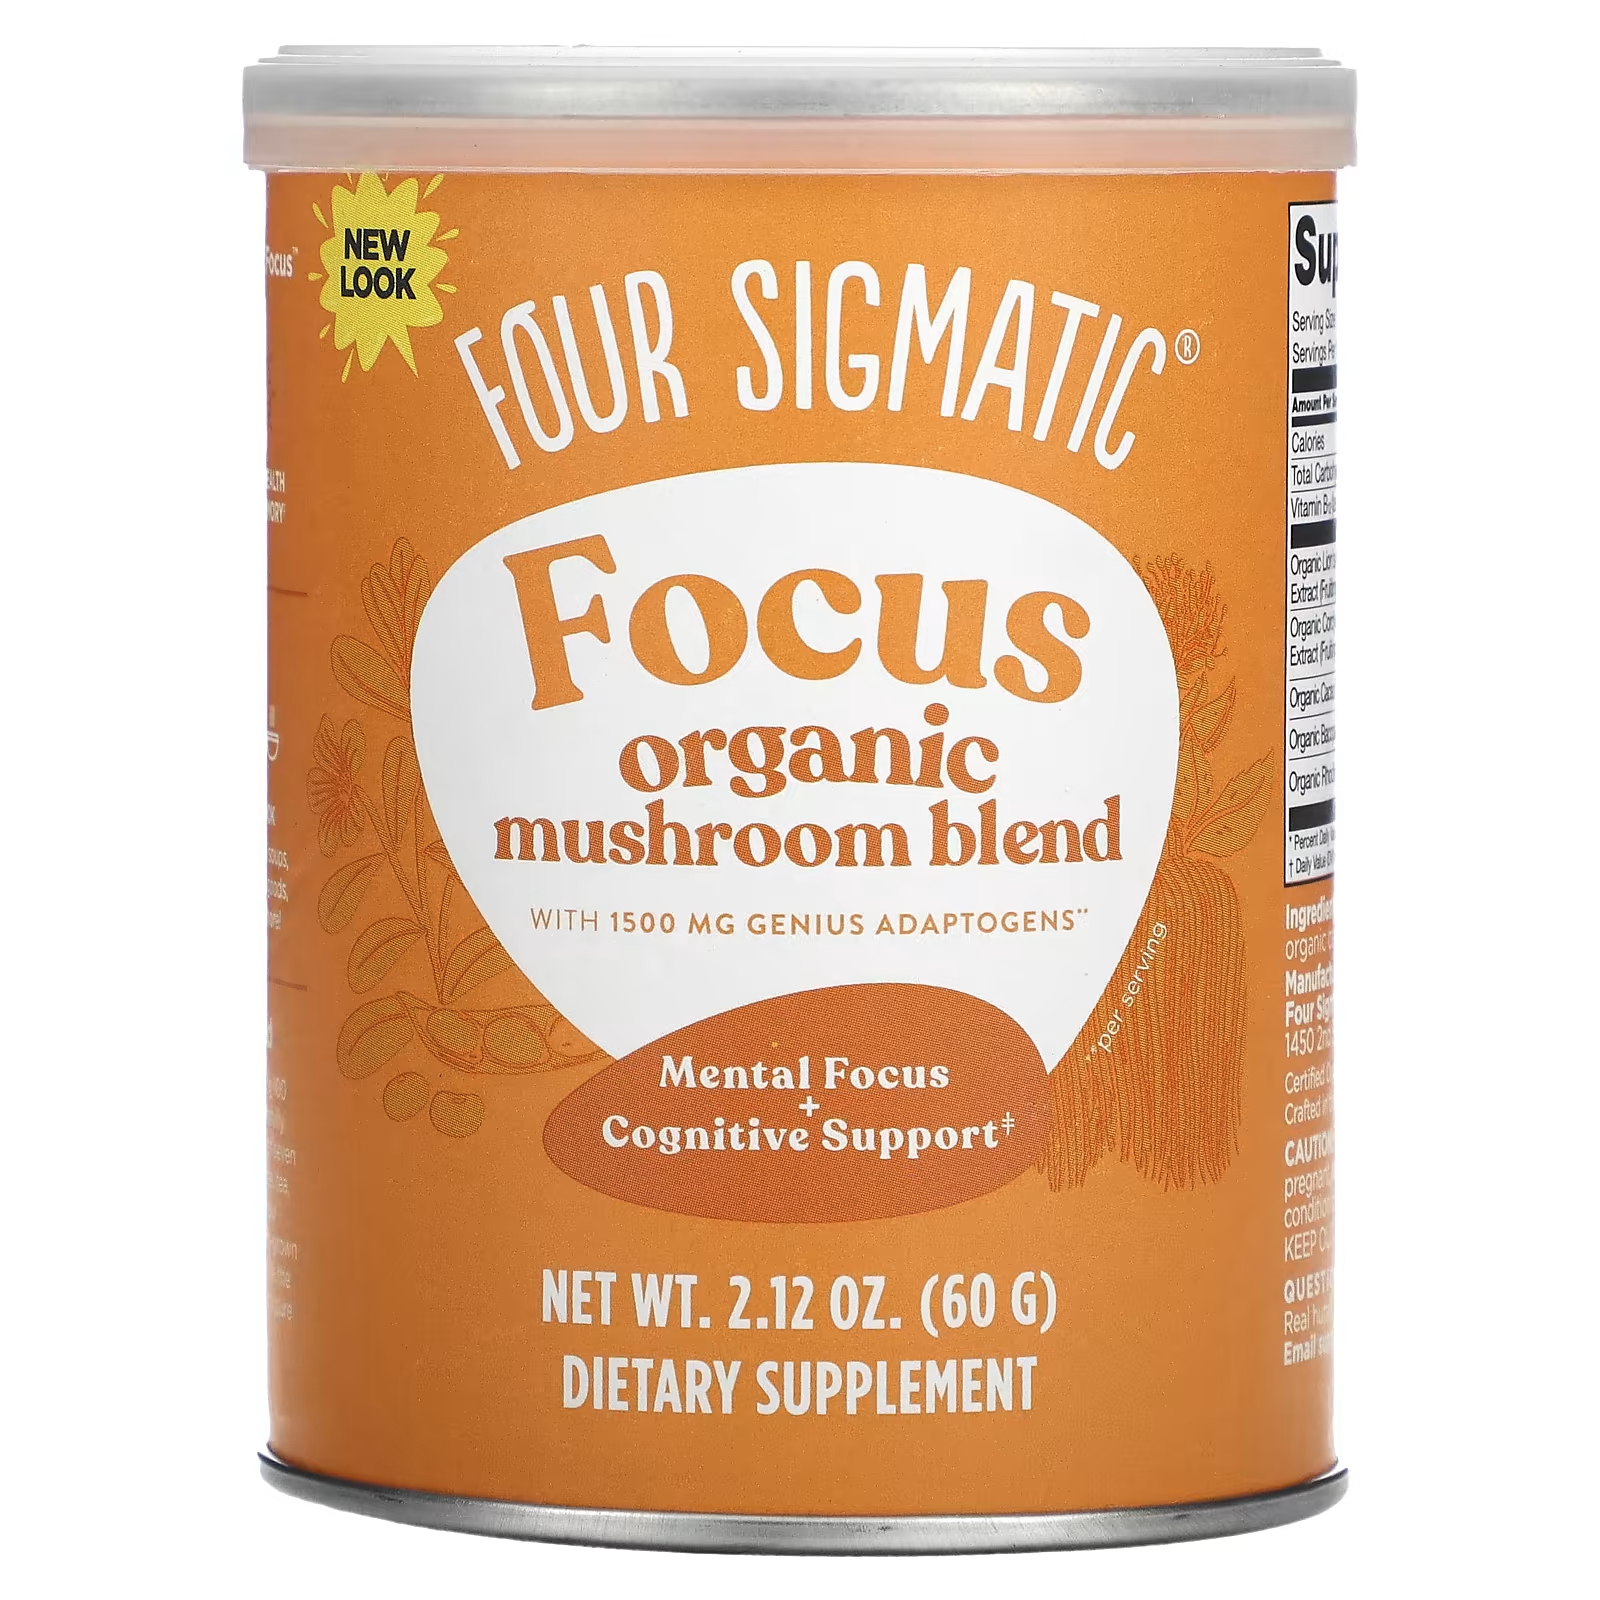 Органическая грибная смесь Four Sigmatic Focus, 60 г гормли джеймс либерман шерри натуральные средства для улучшения работы мозга